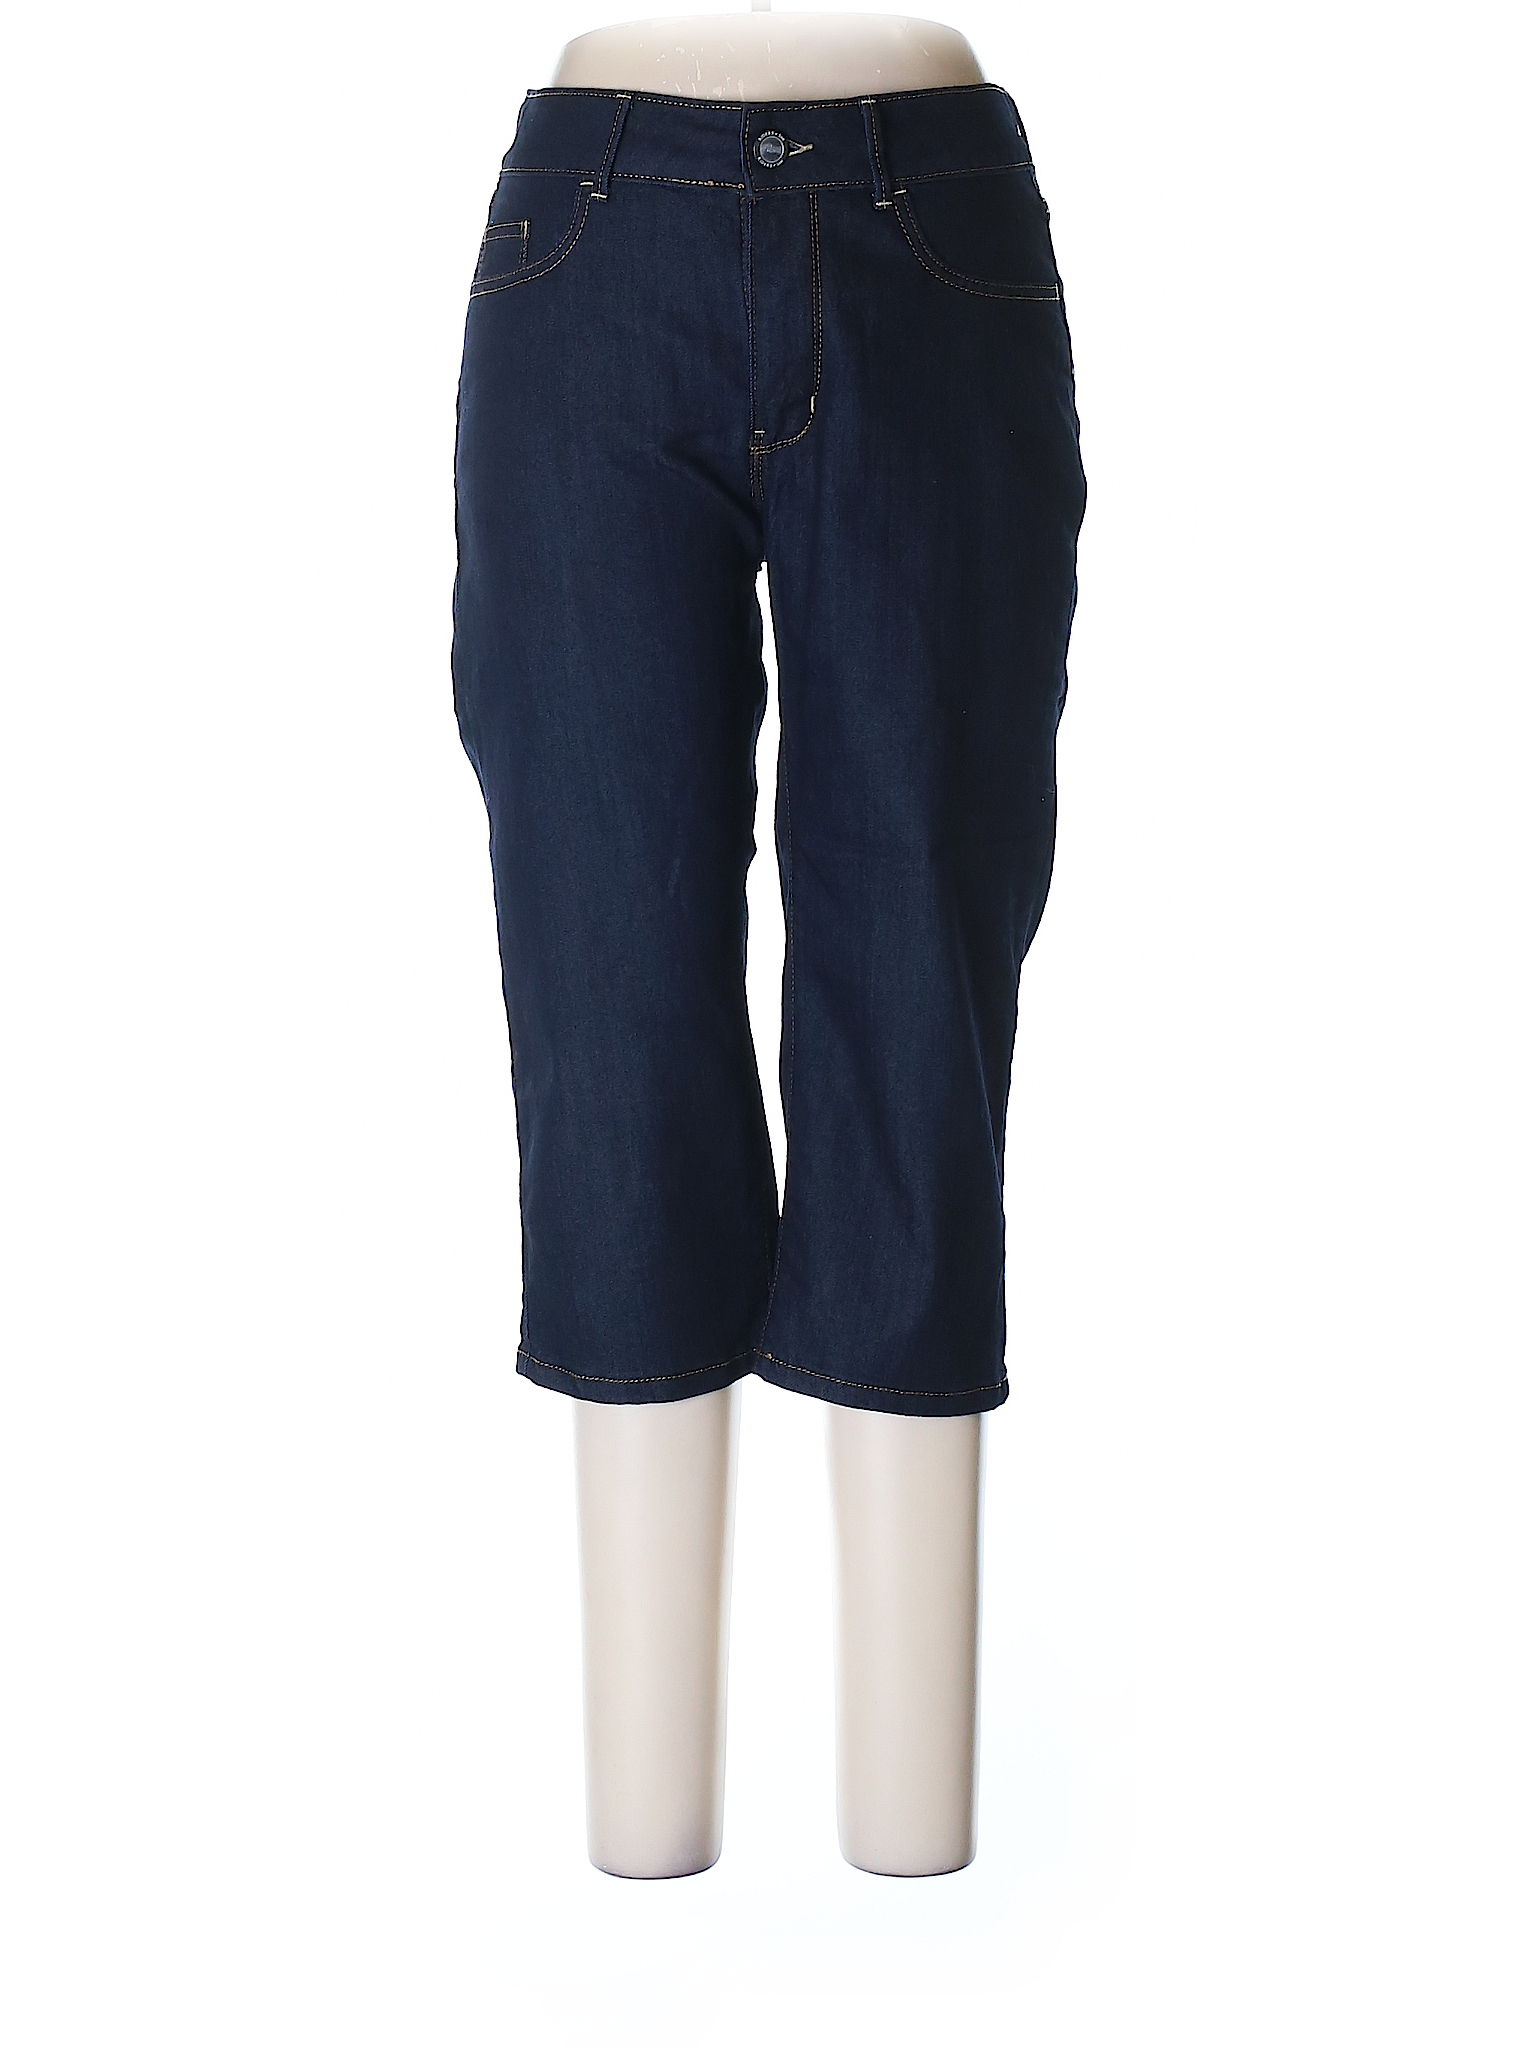 Lee Solid Dark Blue Jeans Size 10 - 82% off | thredUP